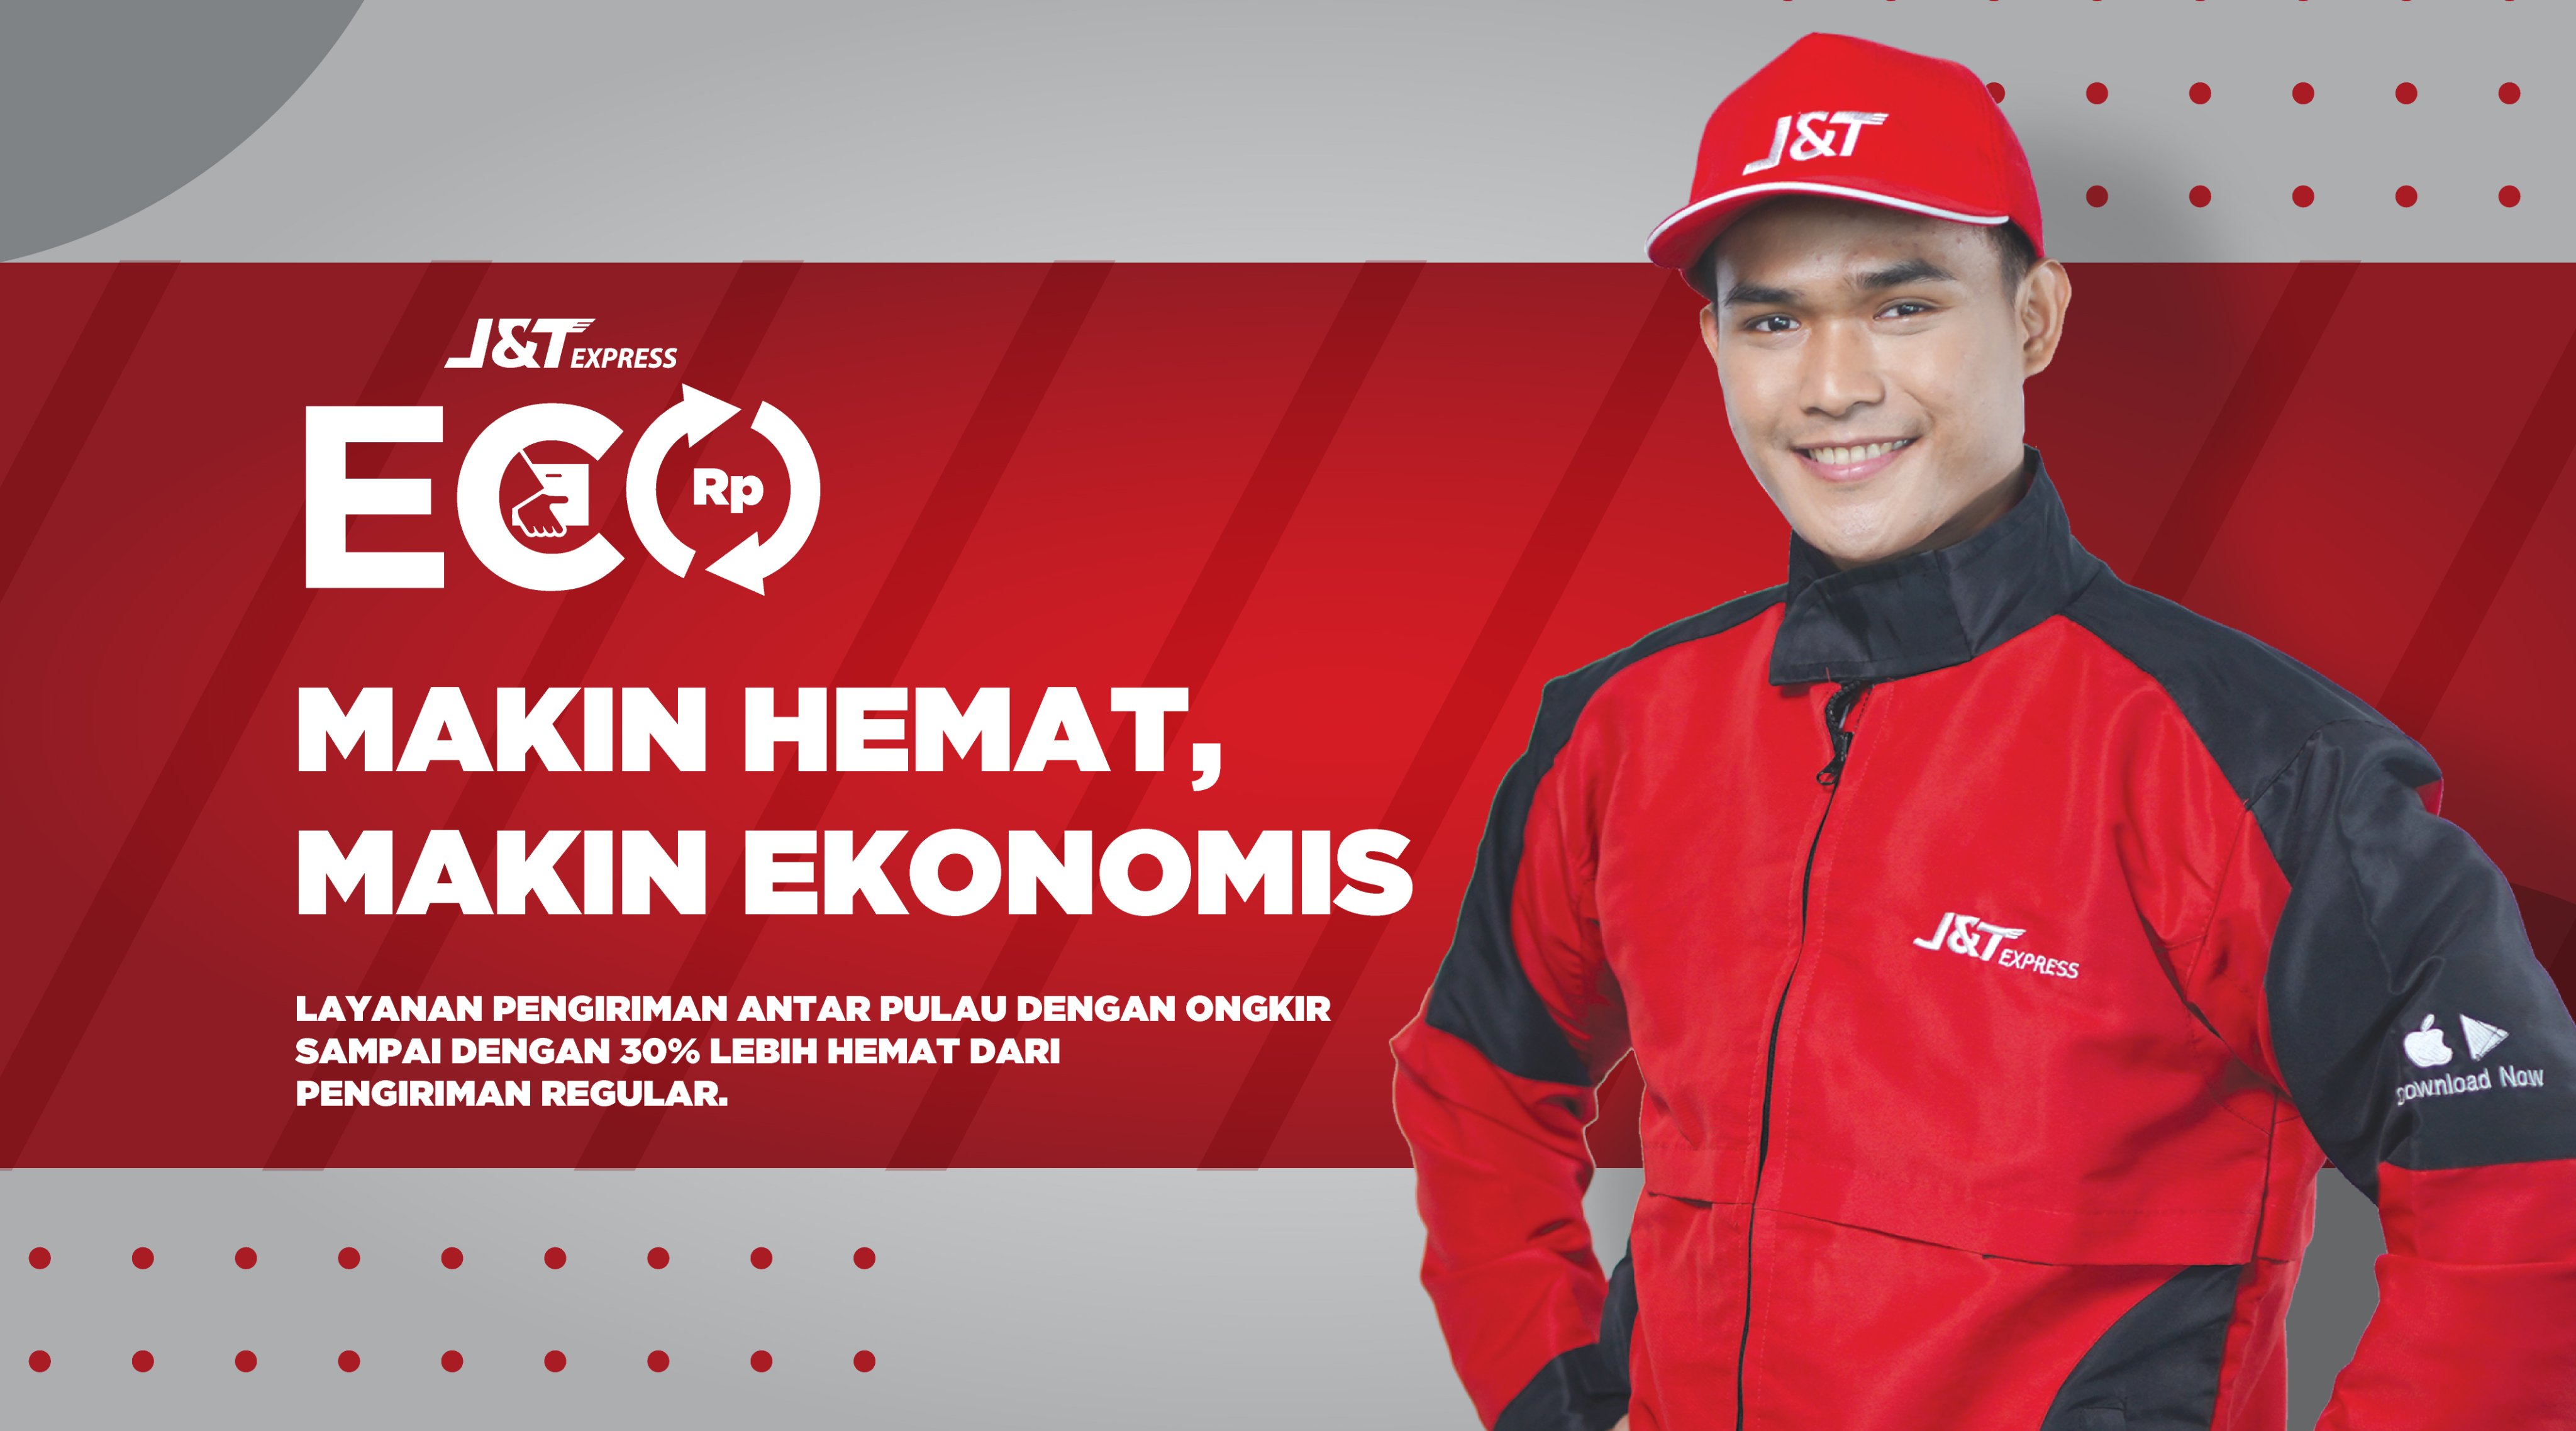 J&T Express Indonesia on Twitter: "Hei kamu~ Iya kamu! Udah tau belum layanan terbaru J&amp;T Express? Sekarang, kirim barang jadi lebih hemat dan lebih terjangkau loh dengan J&amp;T ECO kamu bisa kirim